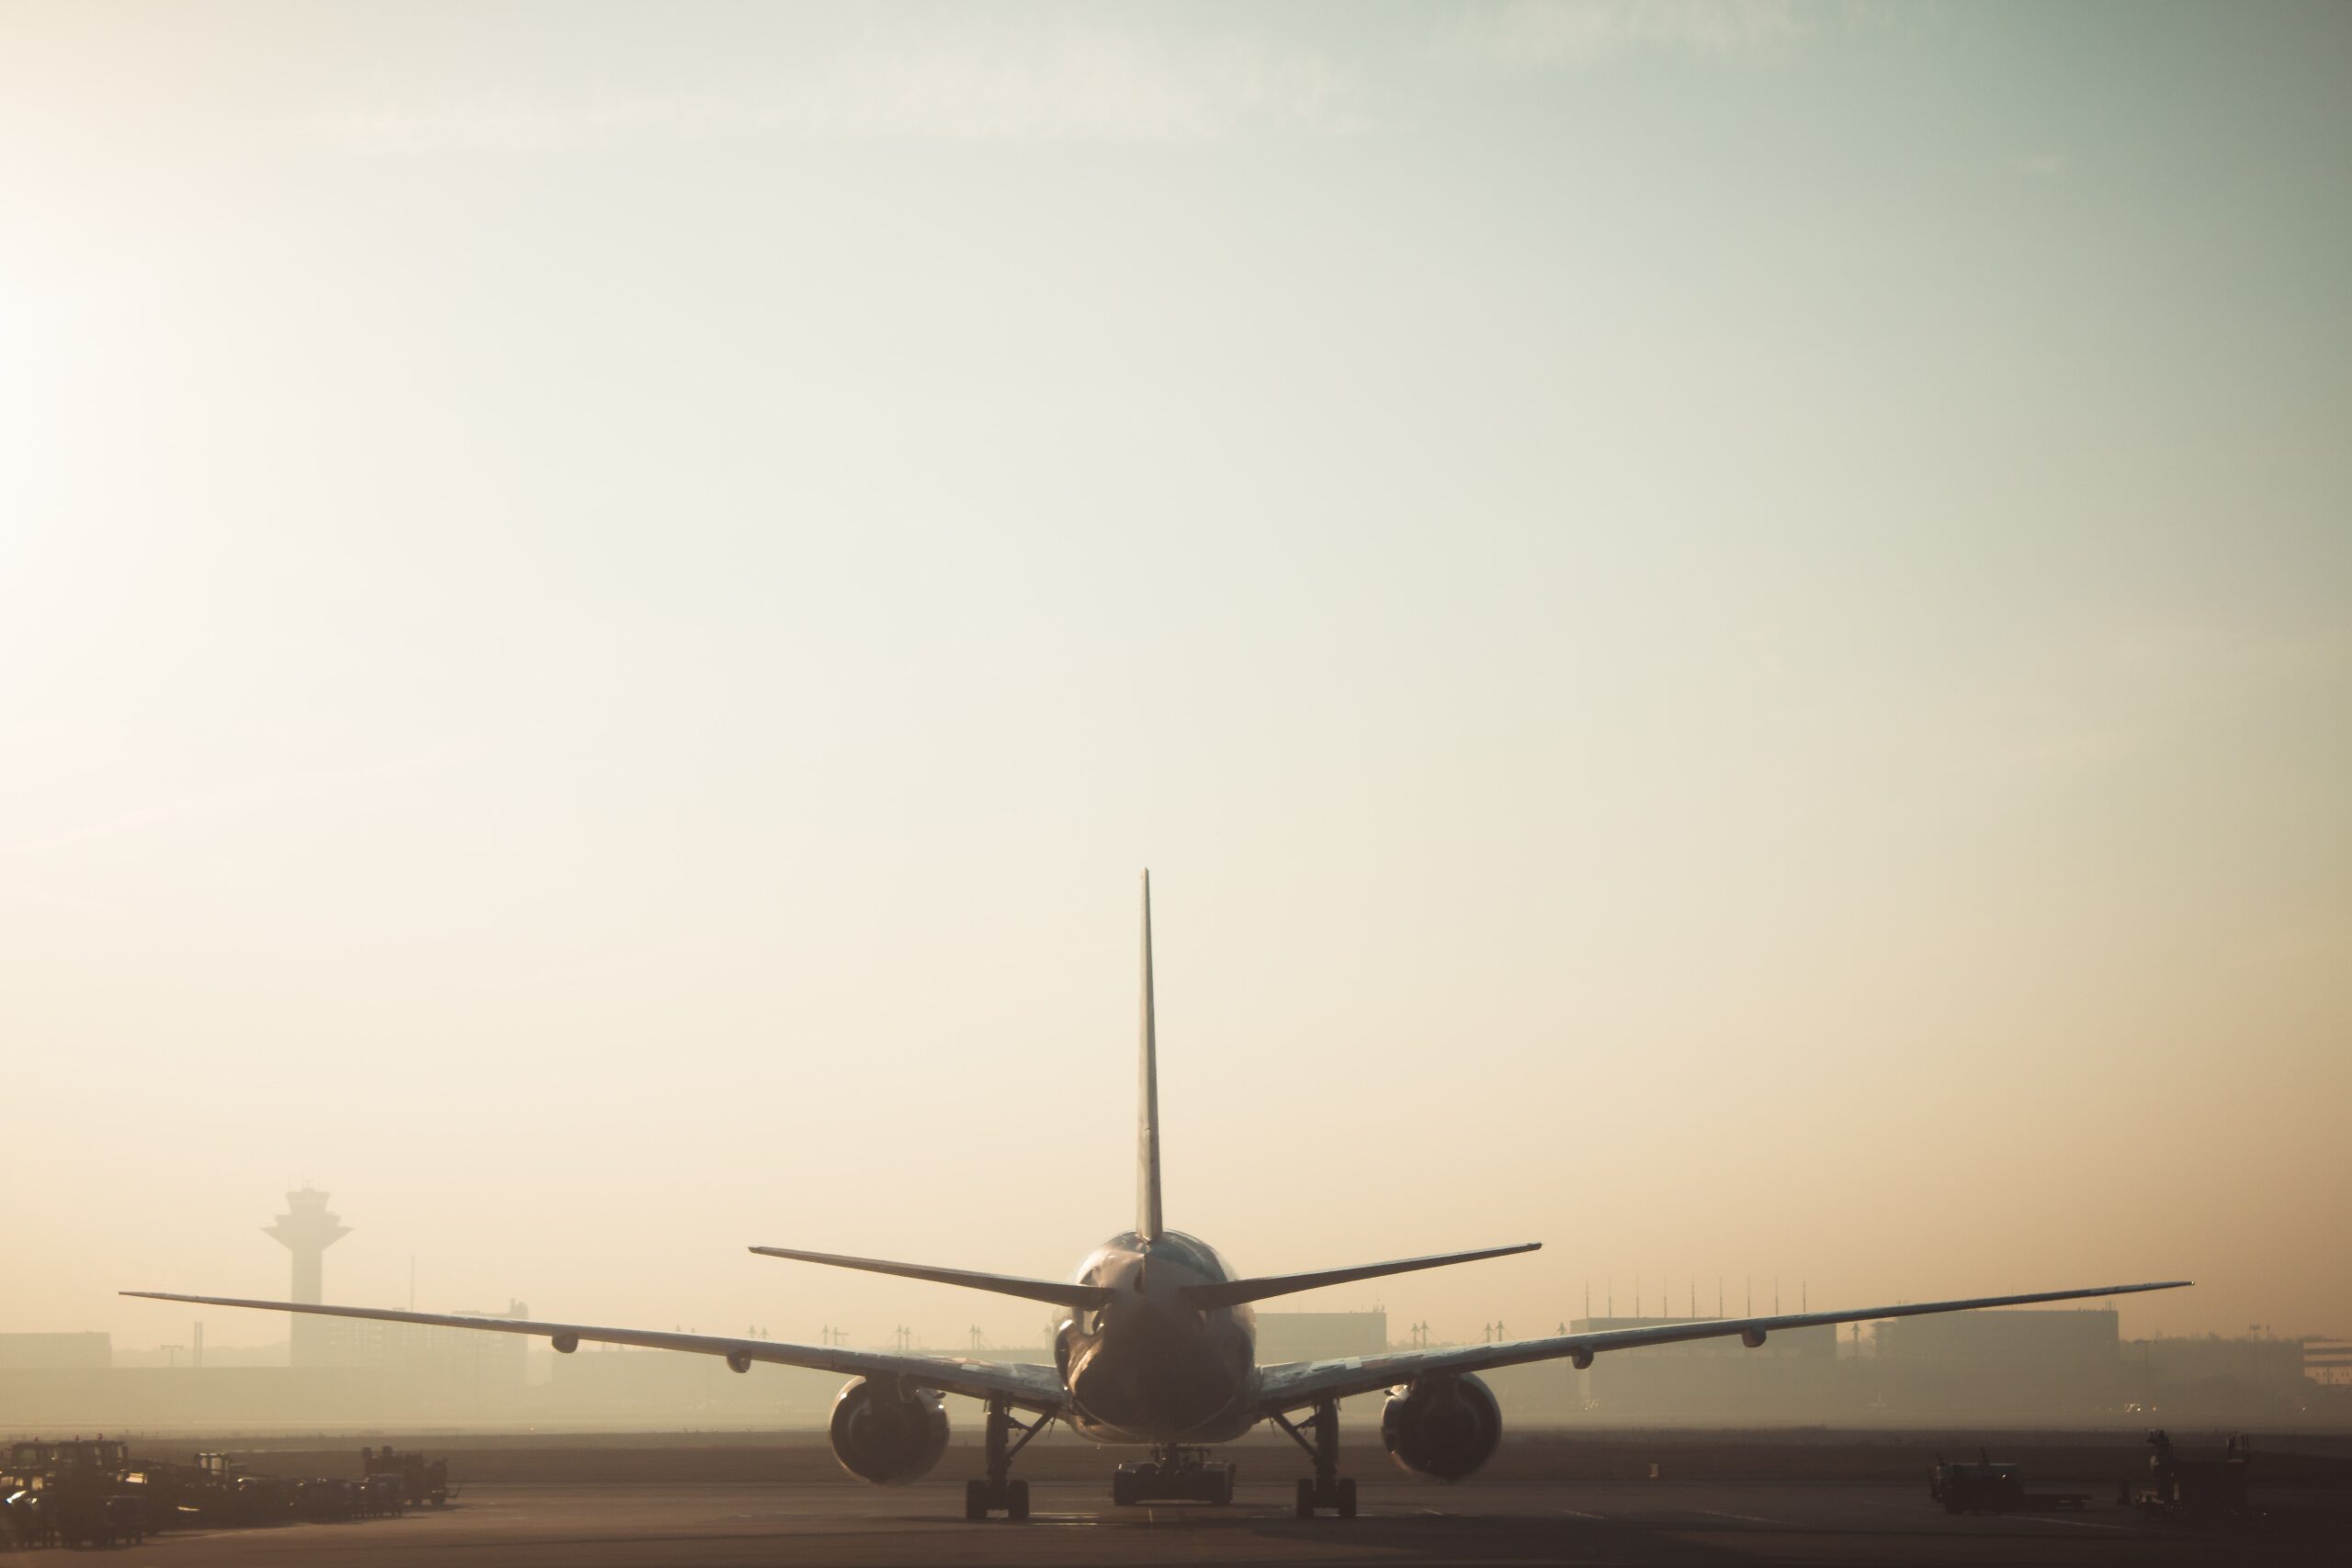 Βέλγιο: Δύο πτήσεις προς Ισραήλ ακύρωσε η Brussels Airlines – Η ΤUI Belgium δεν στέλνει ταξιδιώτες μέχρι τις 21/10